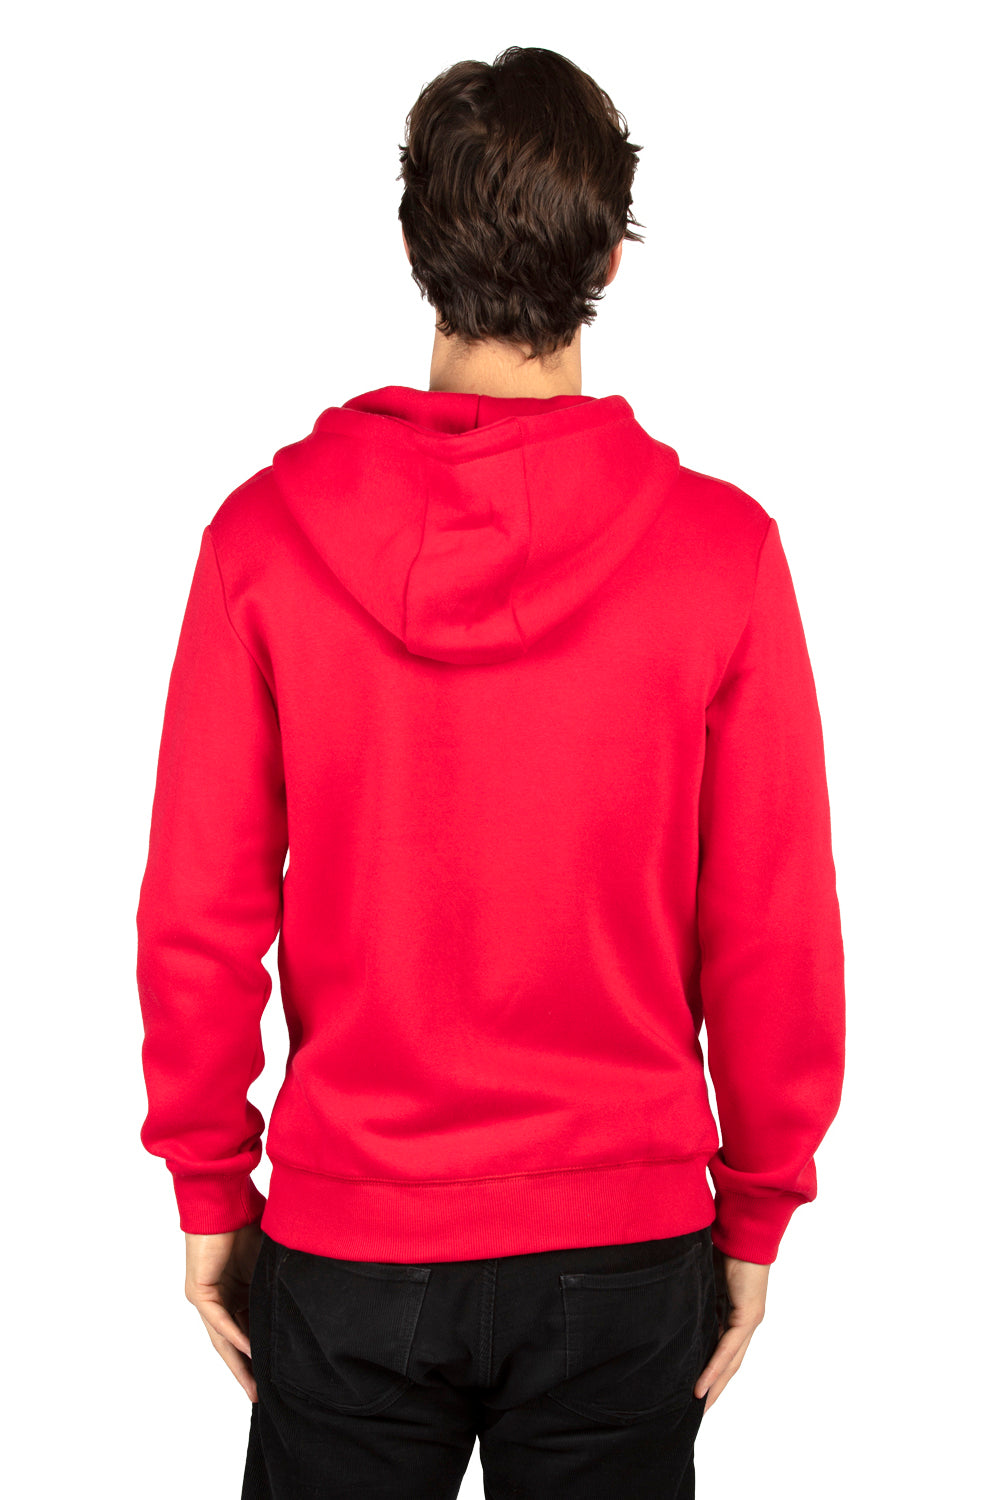 Threadfast Apparel 320Z Mens Ultimate Fleece Full Zip Hooded Sweatshirt Hoodie Red Back